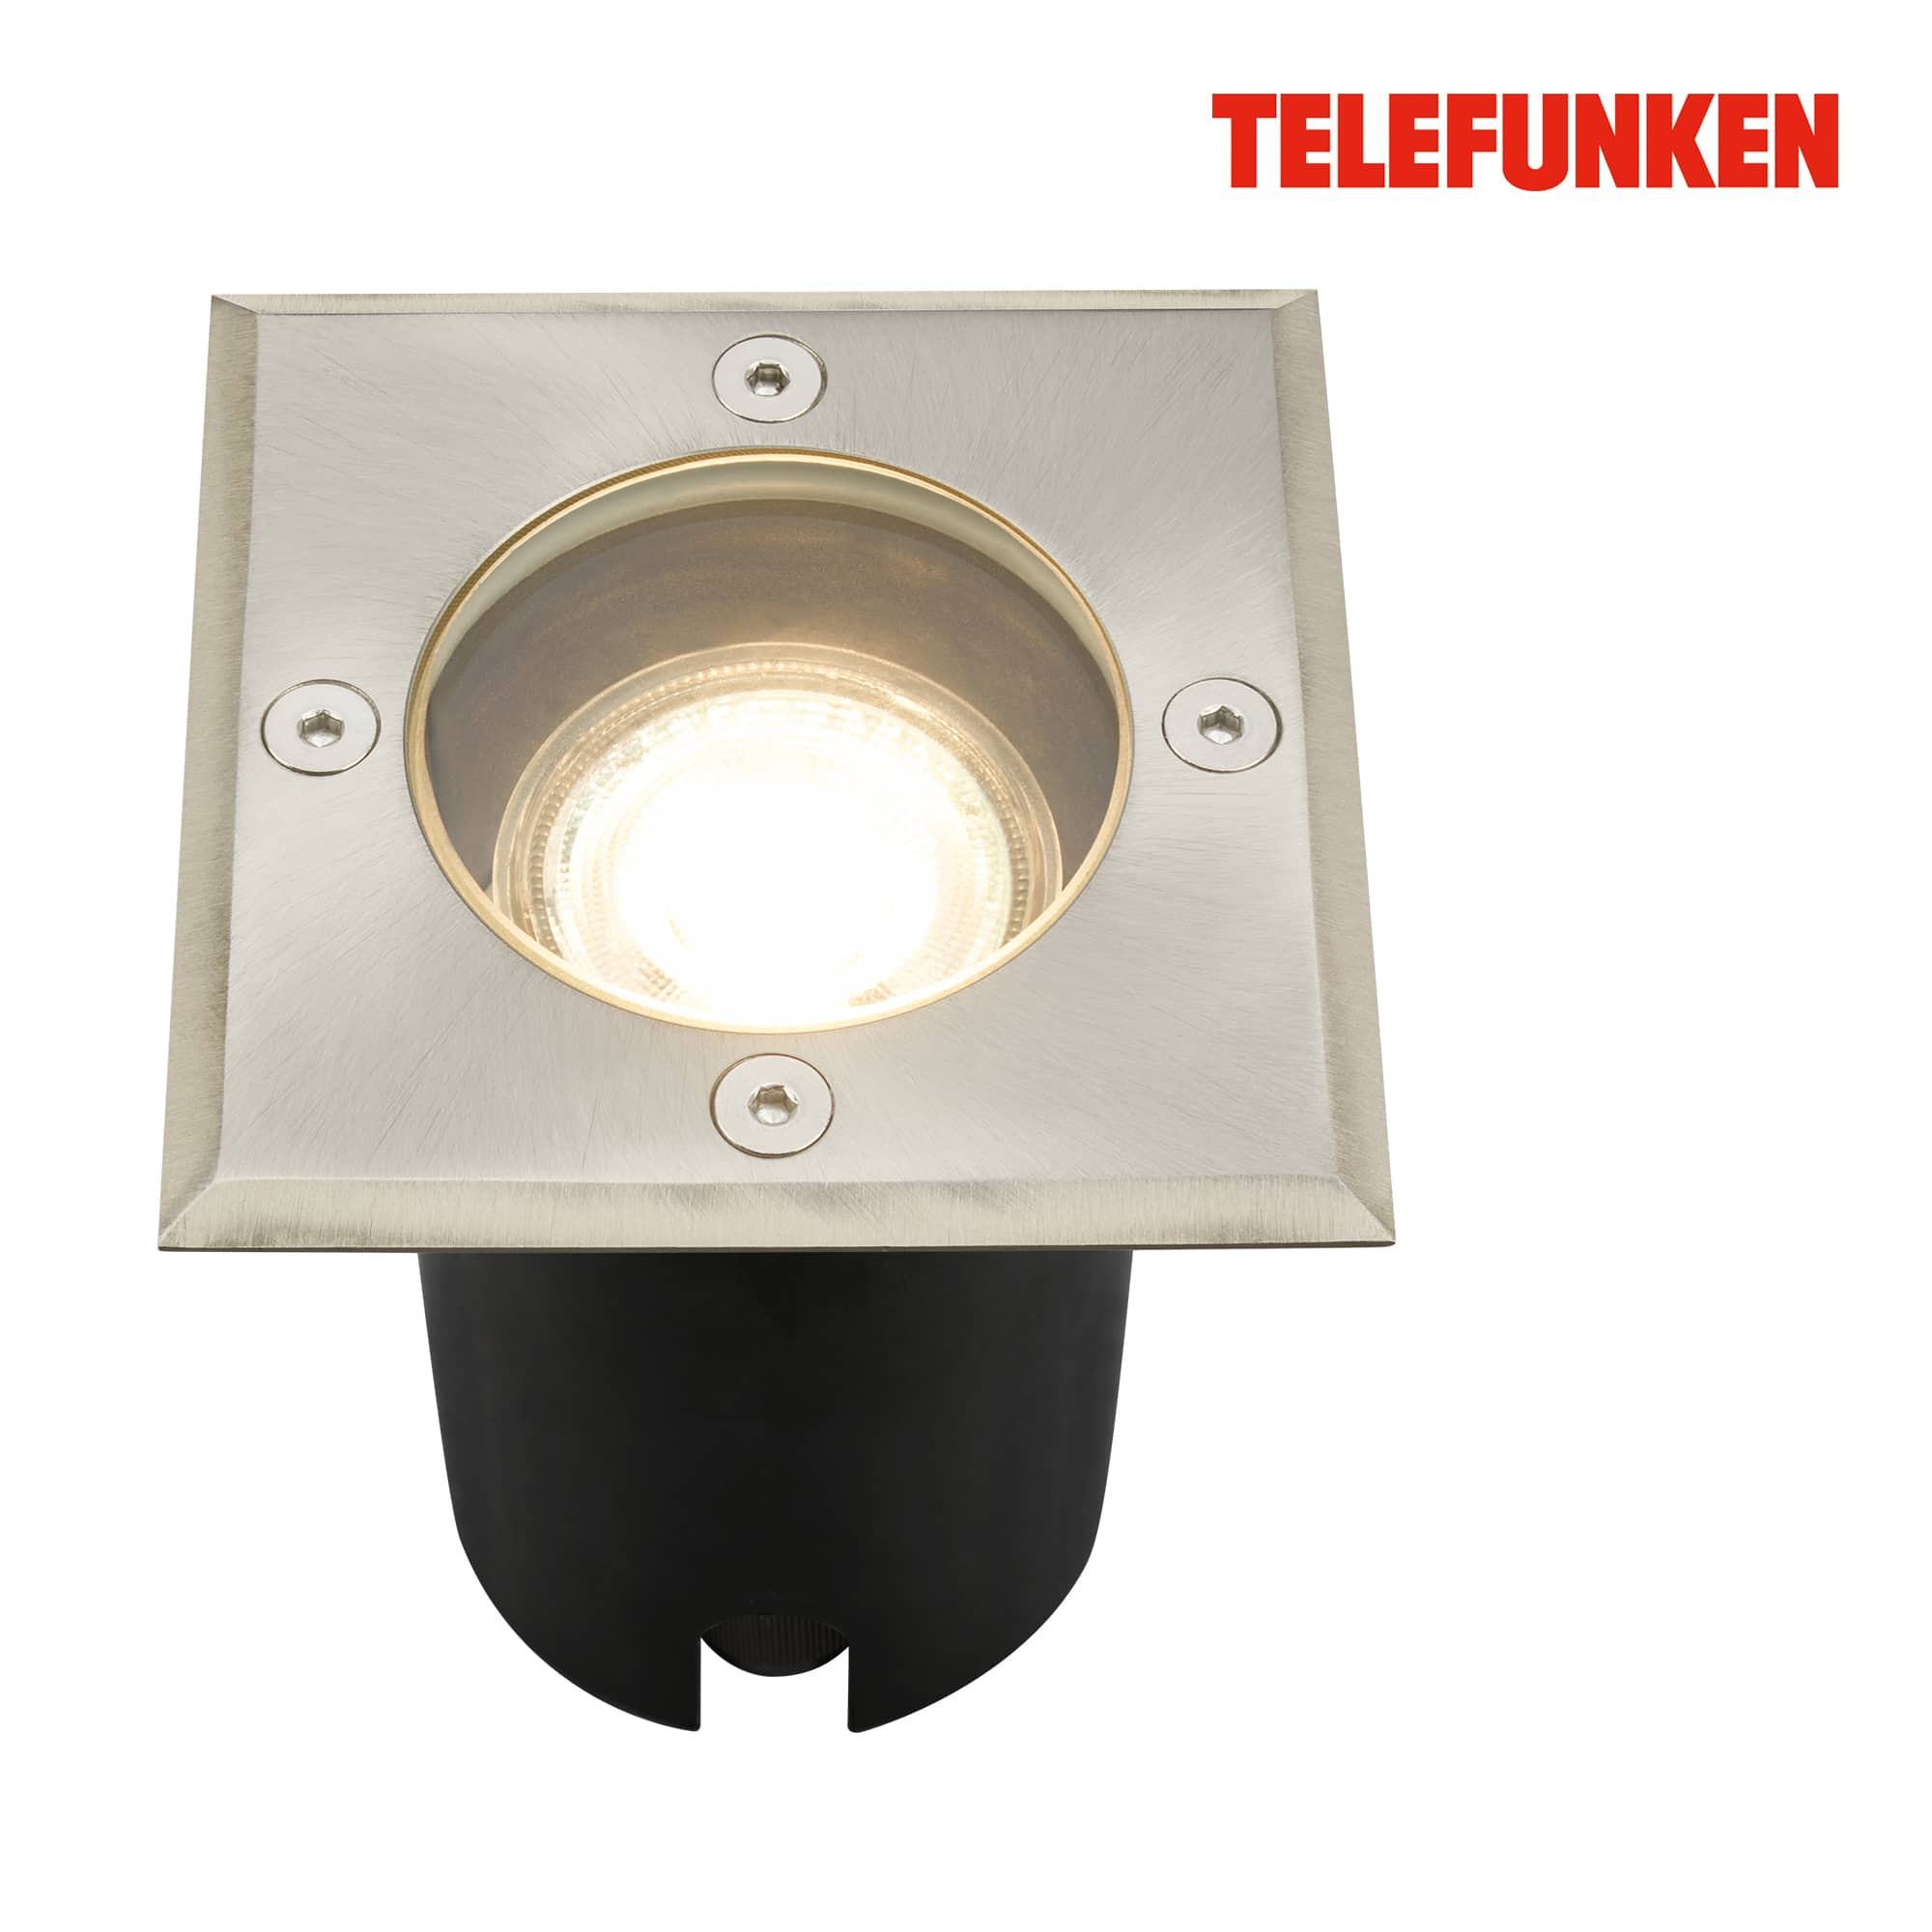 Telefunken in-ground light, waterproof IP67, tempered glass